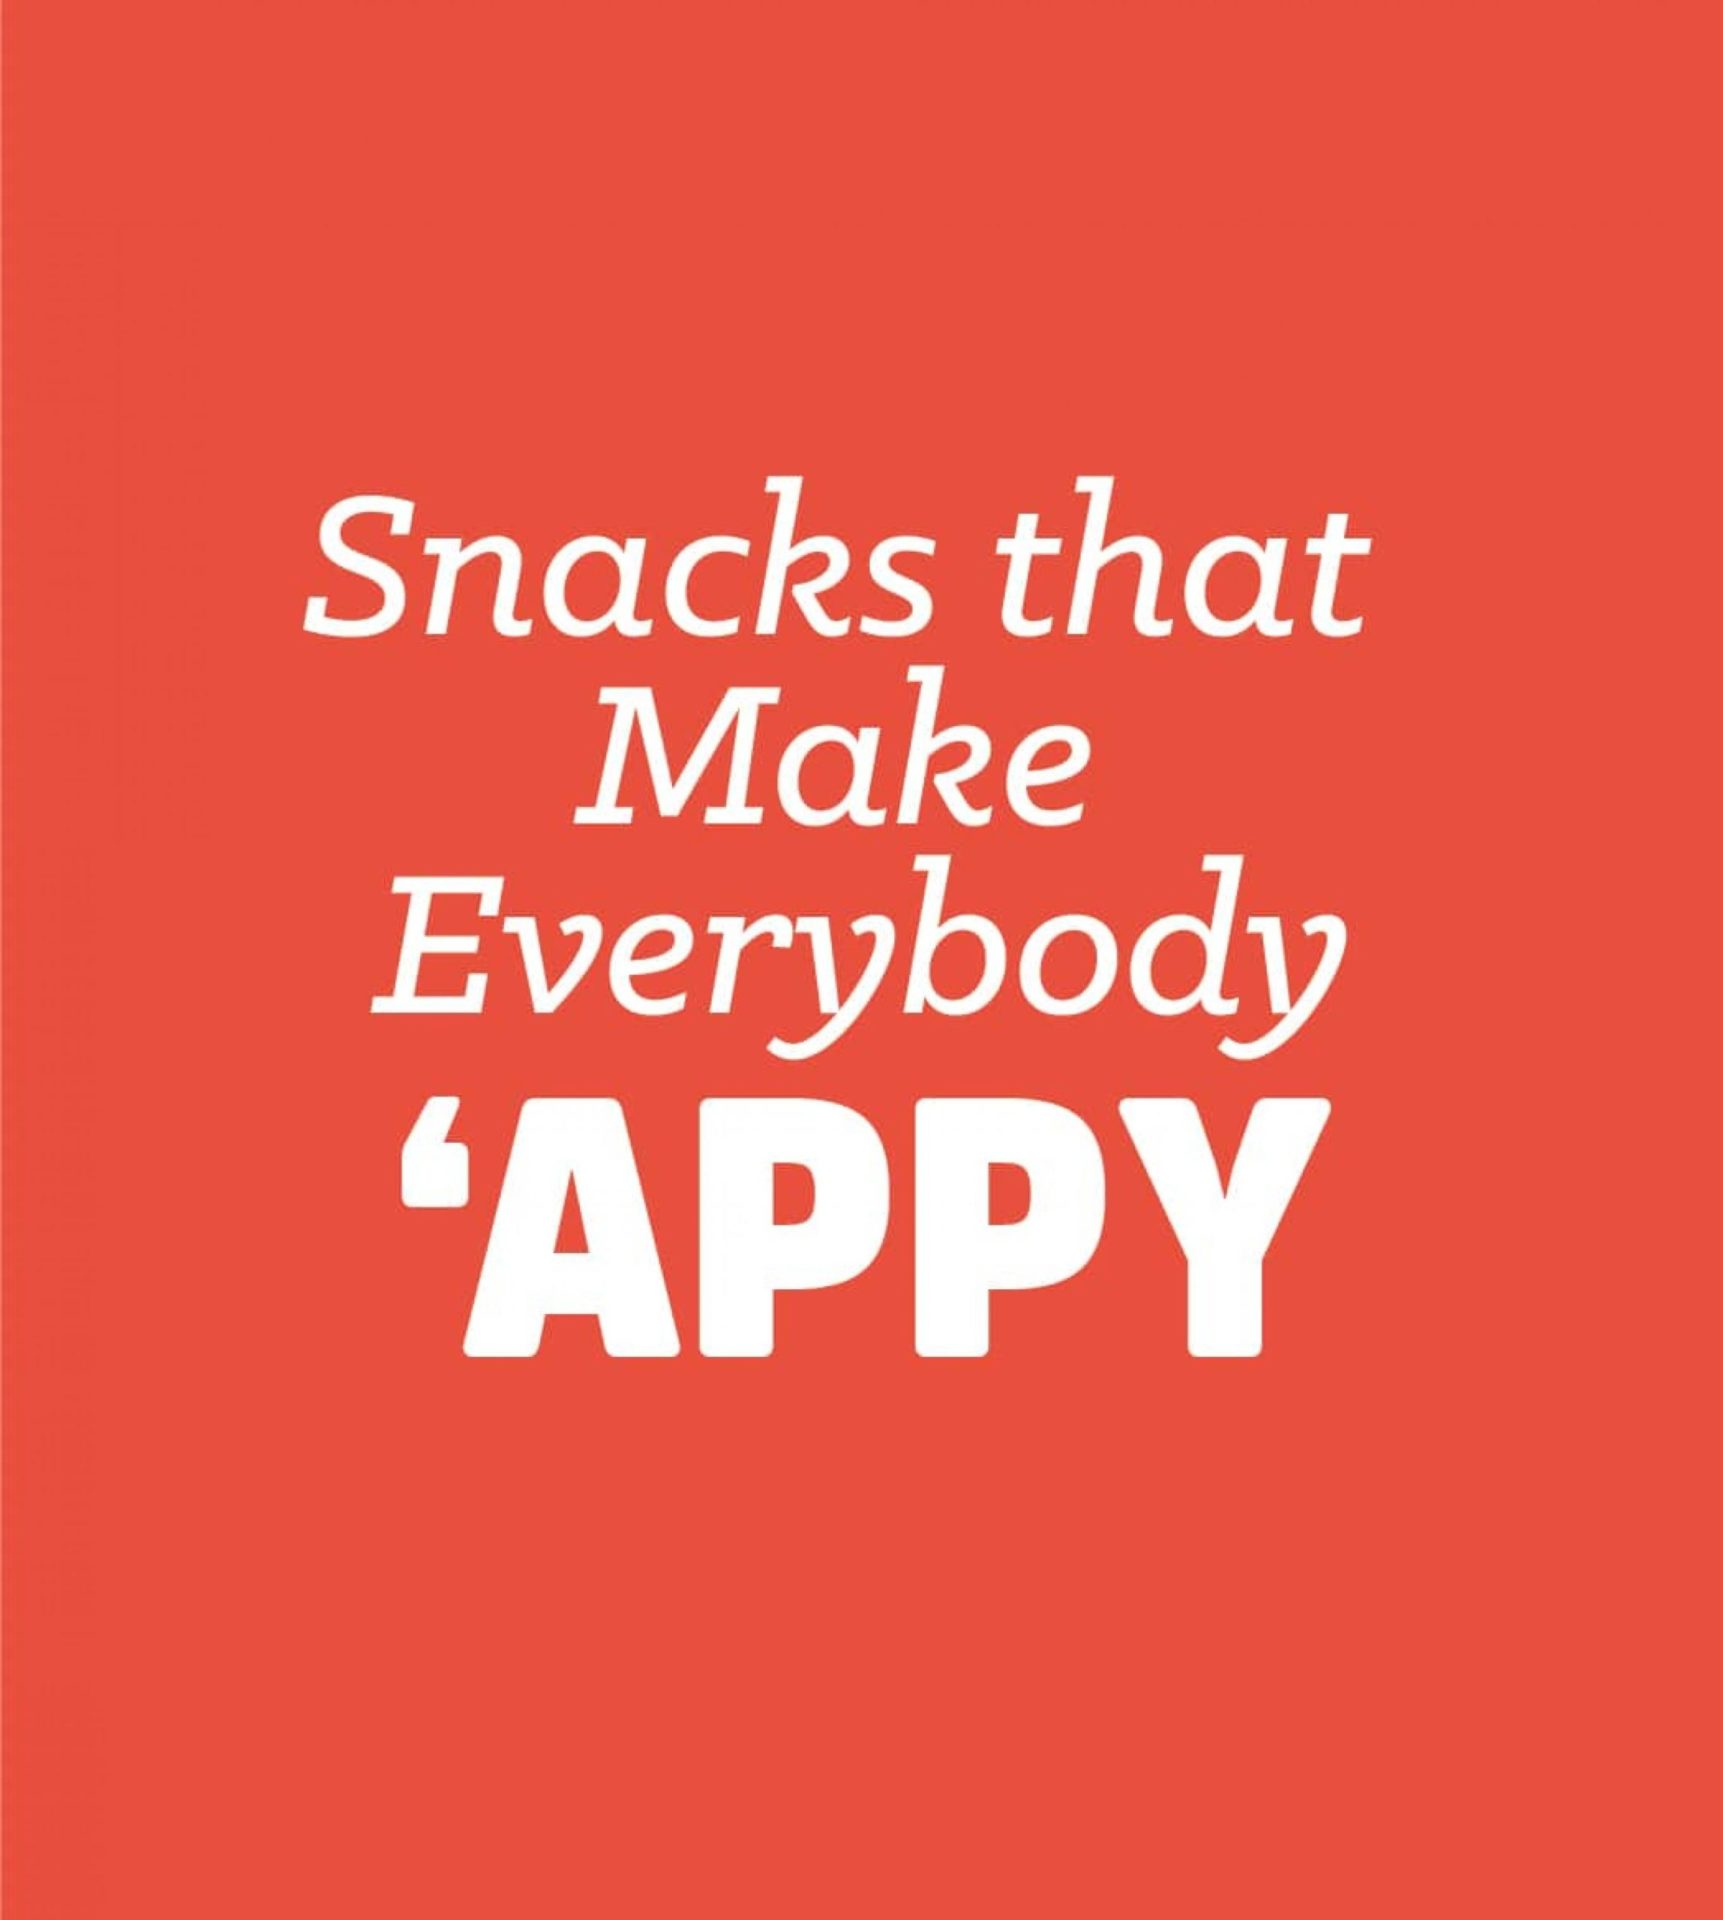 Snacks that Make Everybody APPY